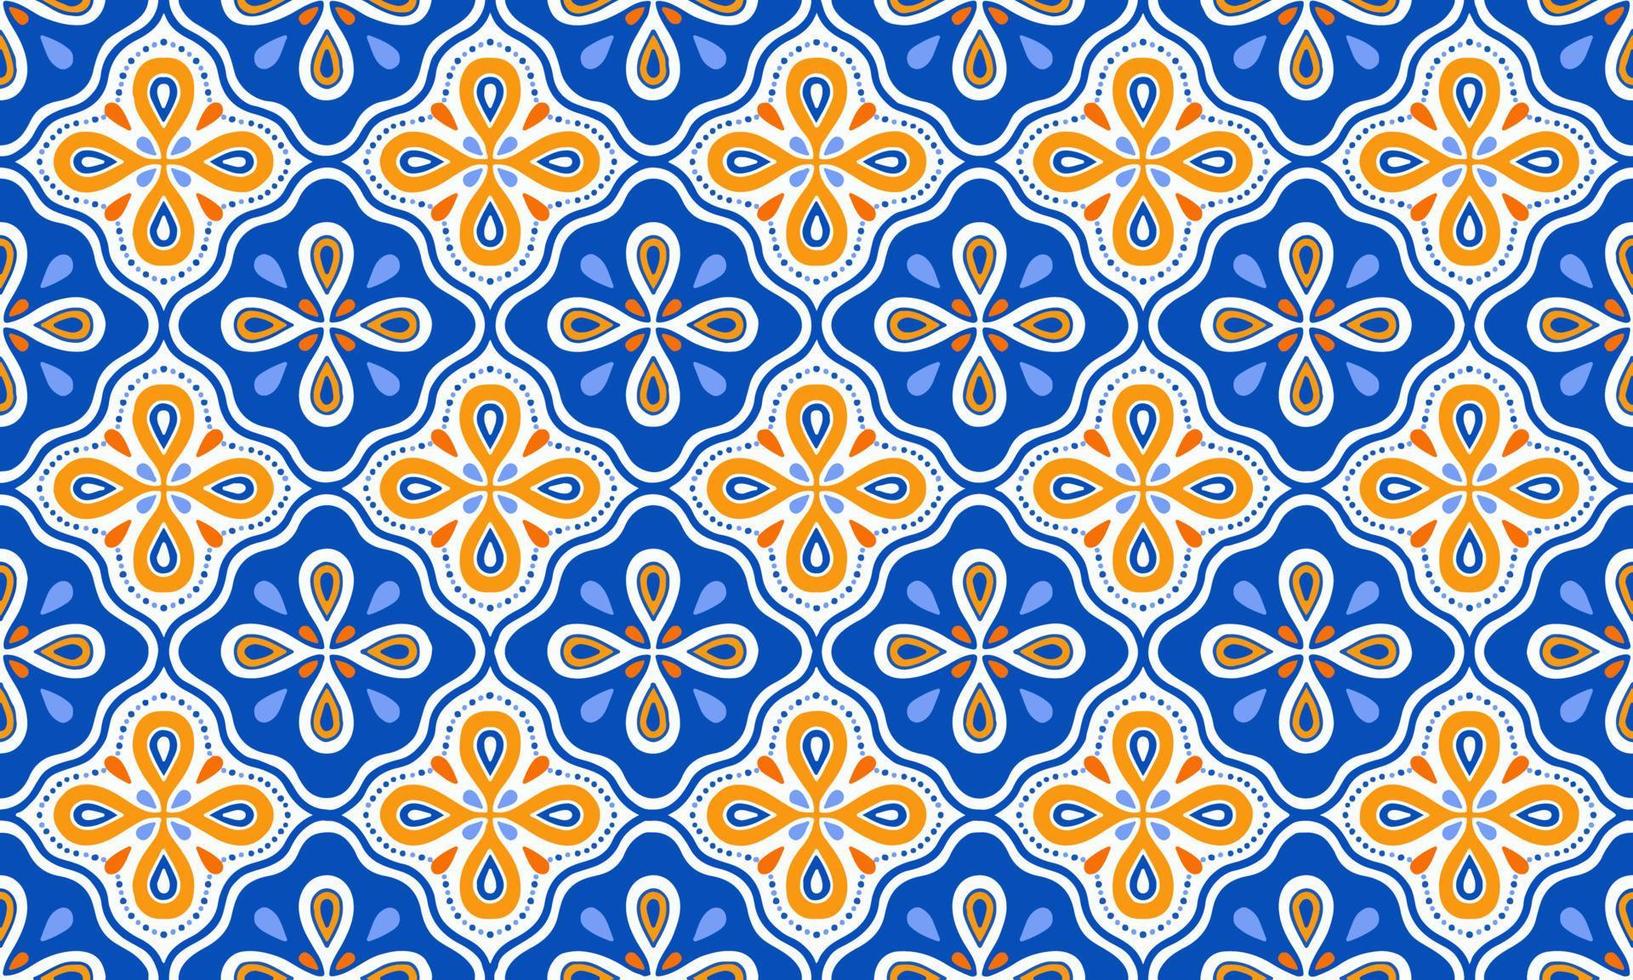 etnisch abstract achtergrond schattig oranje blauw bloem meetkundig tribal ikat volk motief Arabisch oosters inheems patroon traditioneel ontwerp tapijt behang kleding kleding stof omhulsel afdrukken batik volk vector